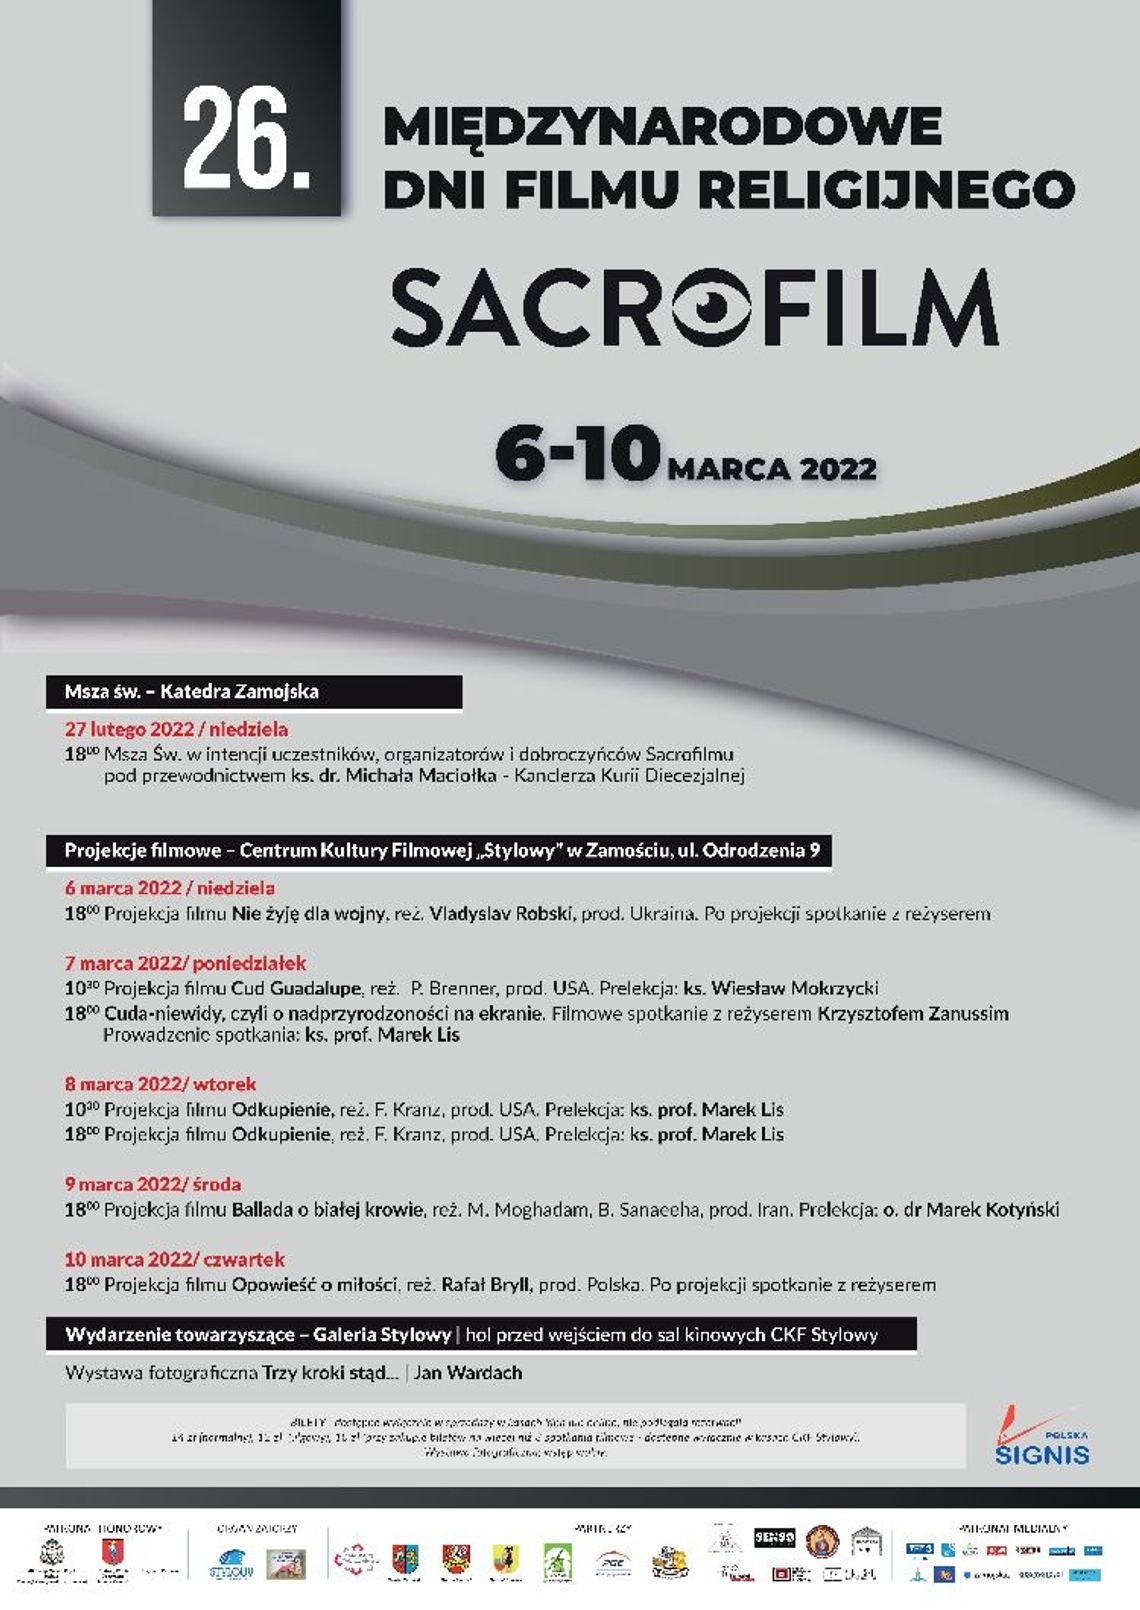 26. Międzynarodowe Dni Filmu Religijnego „Sacrofilm” - podsumowanie